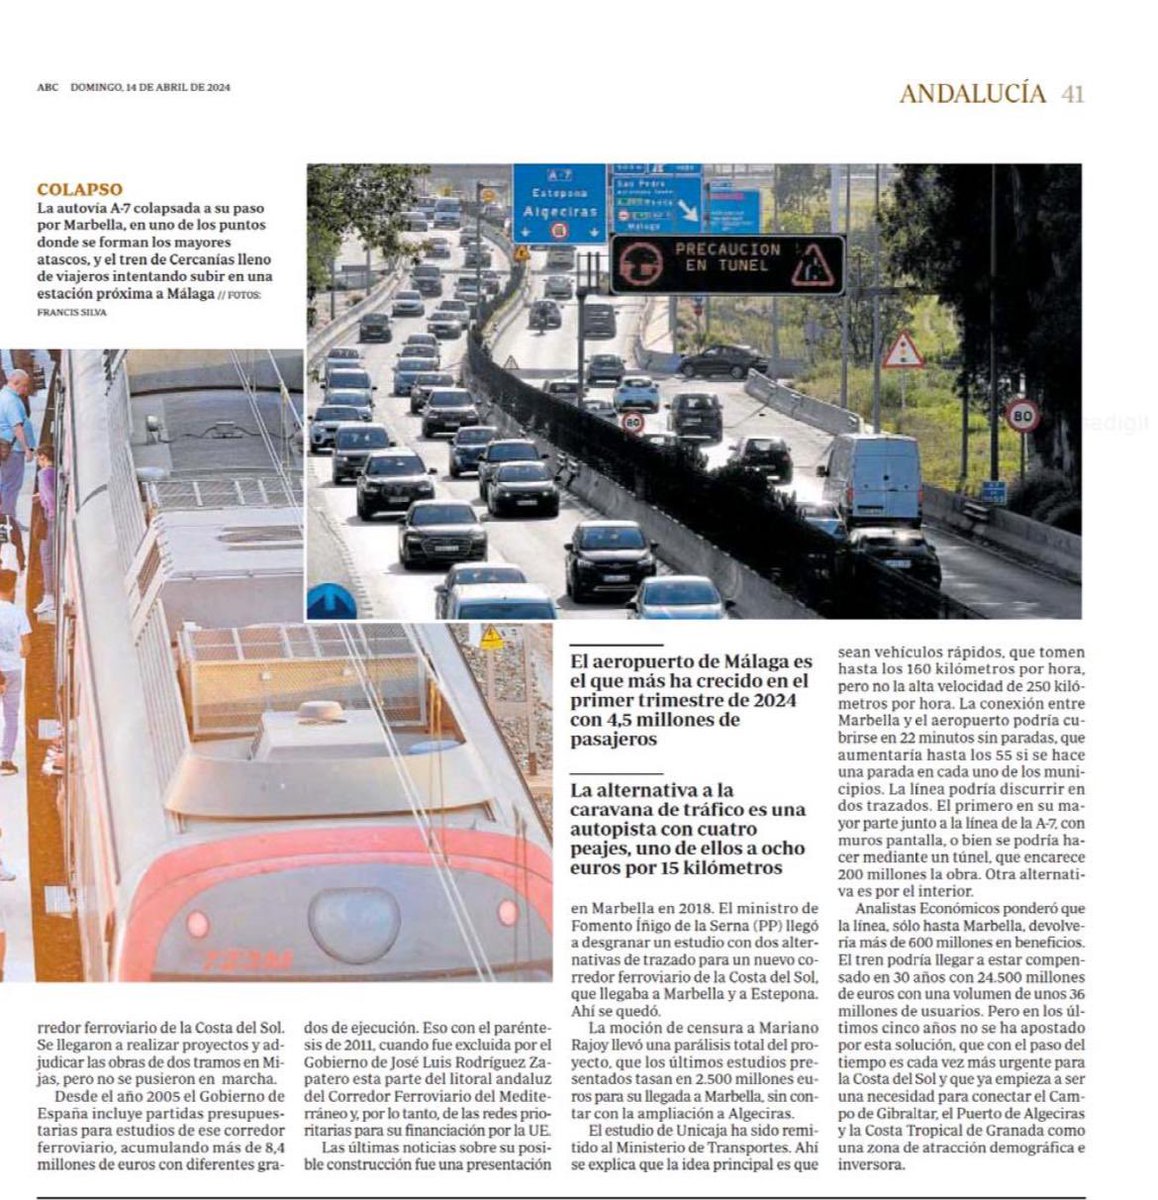 Cuatro millones de andaluces atascados en 30 kilómetros. La conexión entre Motril y Algeciras está bloqueada entre Fuengirola y Marbella por la falta tren y carreteras. El PSOE y Oscar Puente se niegan a dar solución.